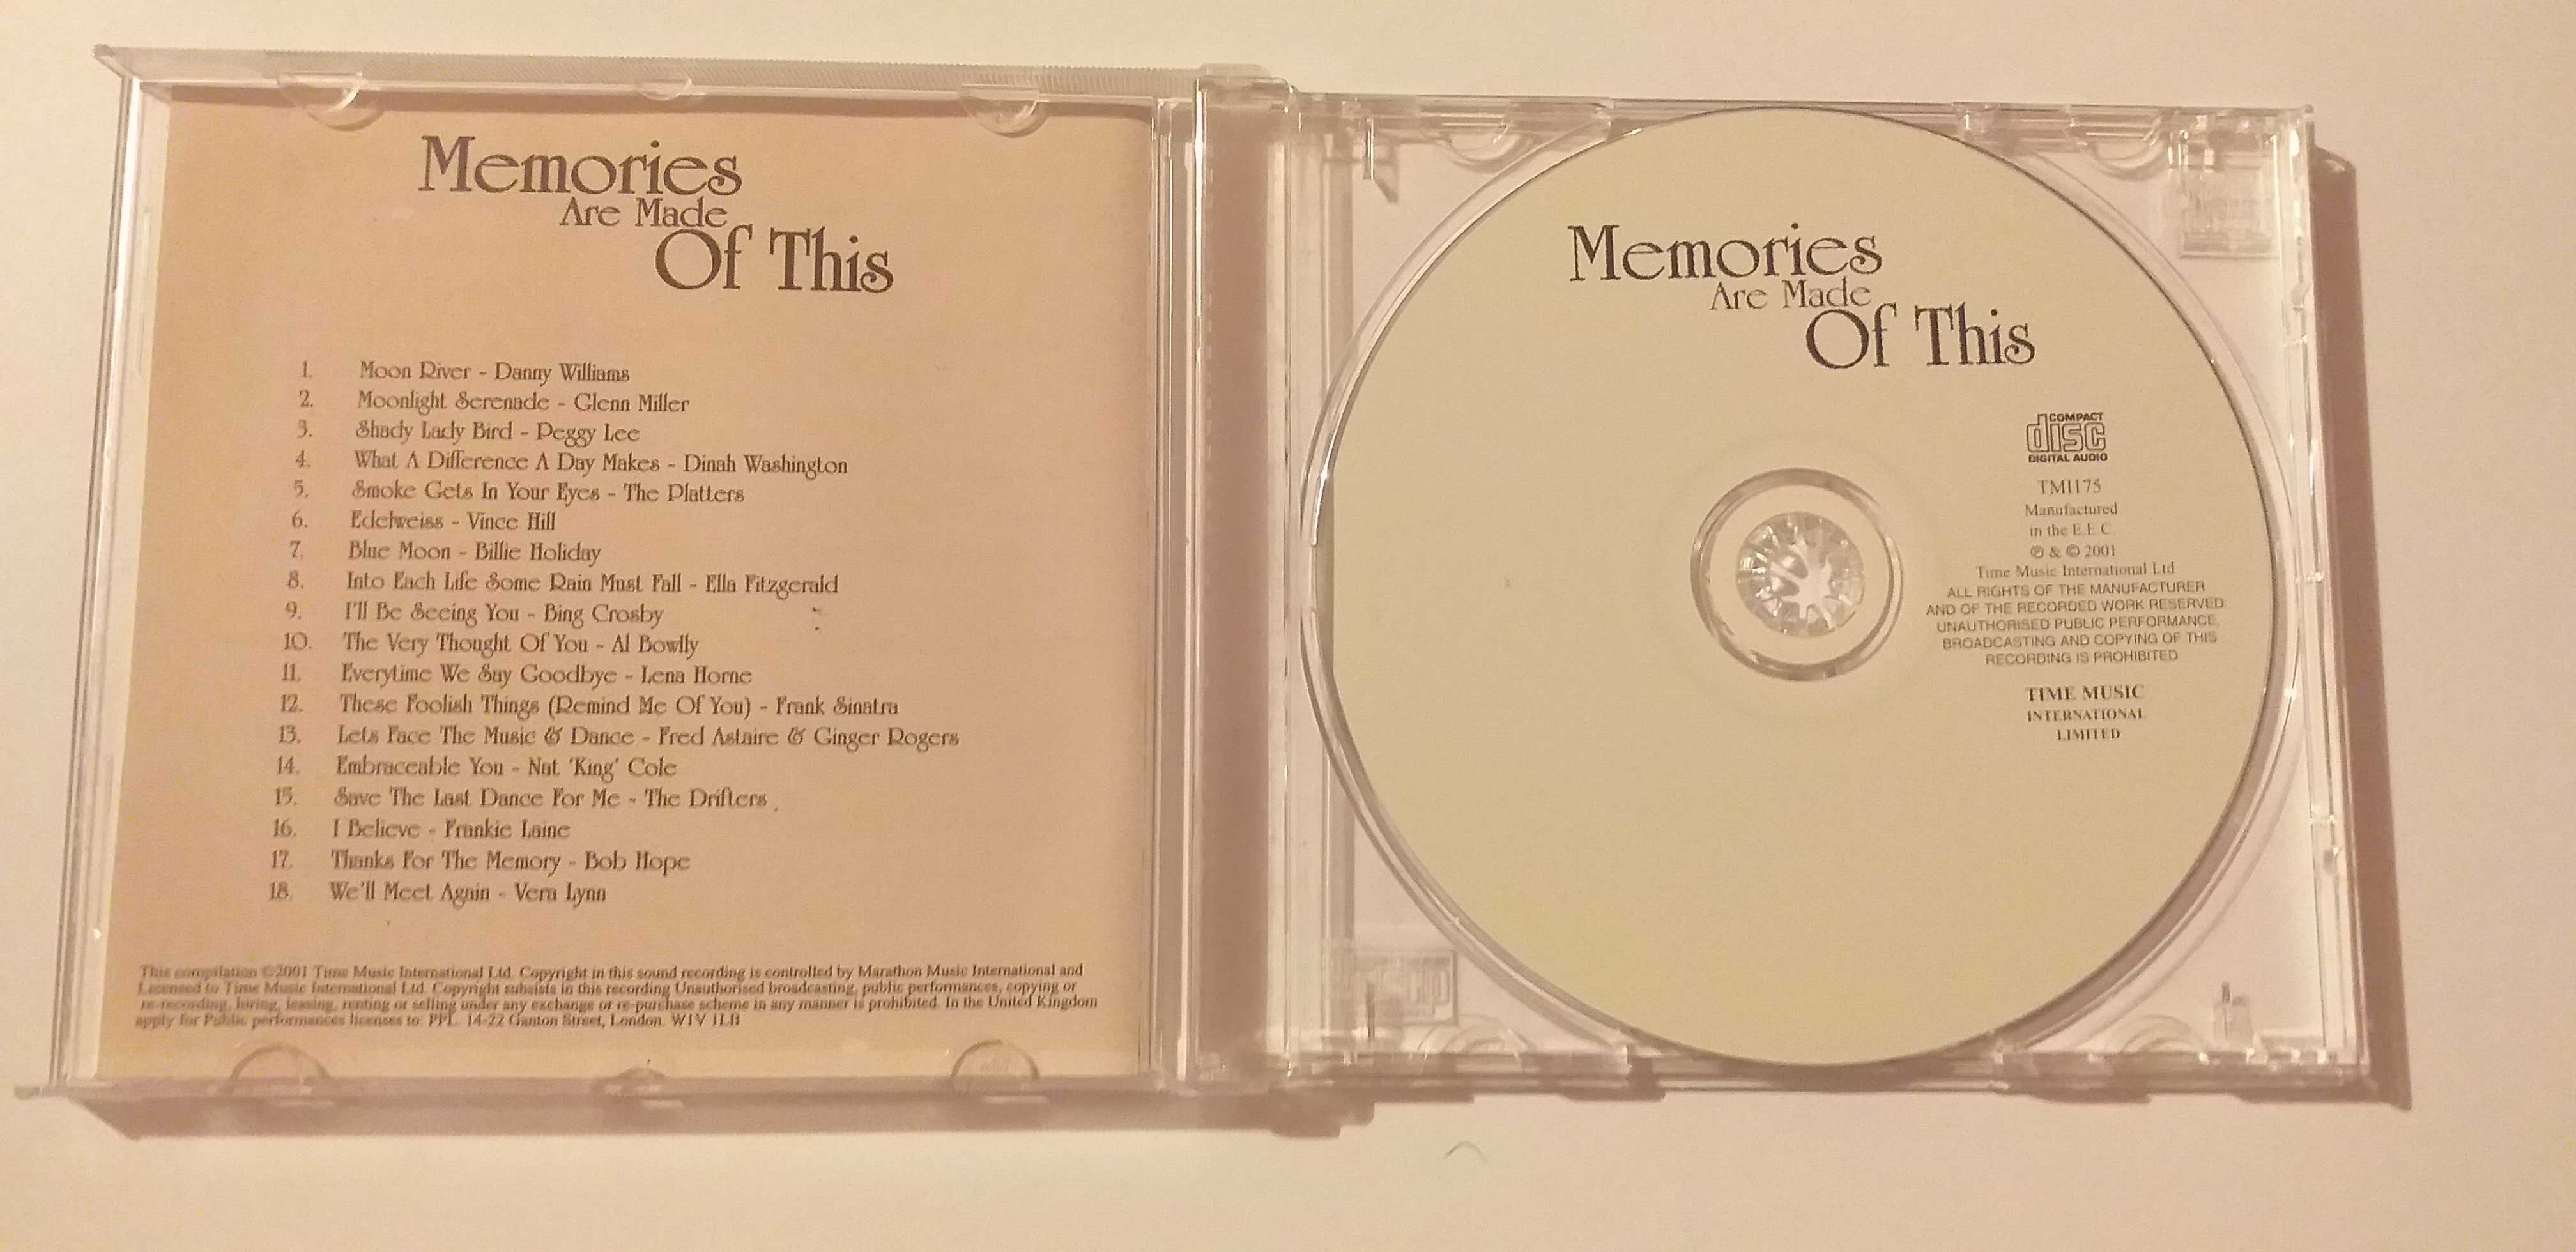 Vários - " Memories are made of this " - CD - portes incluidos